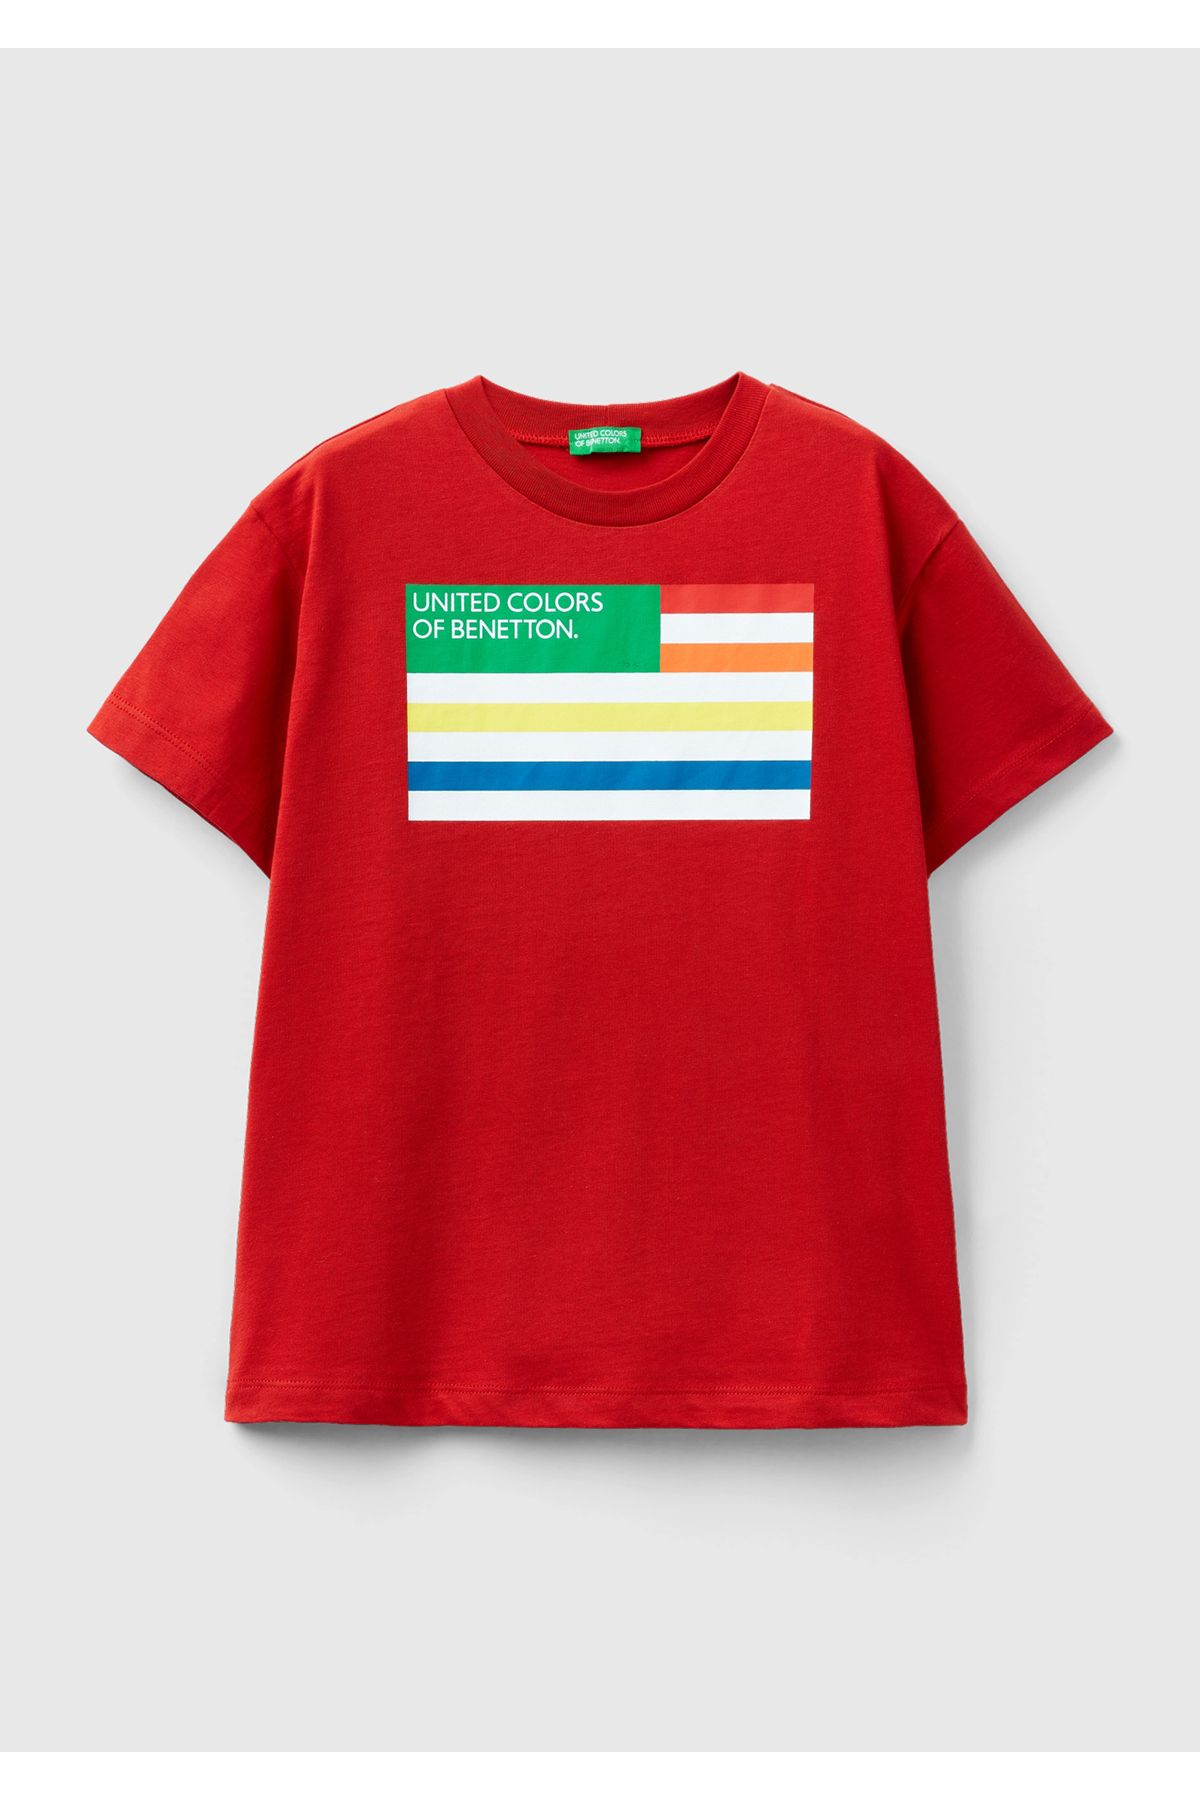 United Colors of Benetton Erkek Çocuk Kırmızı Benetton Logolu T-Shirt